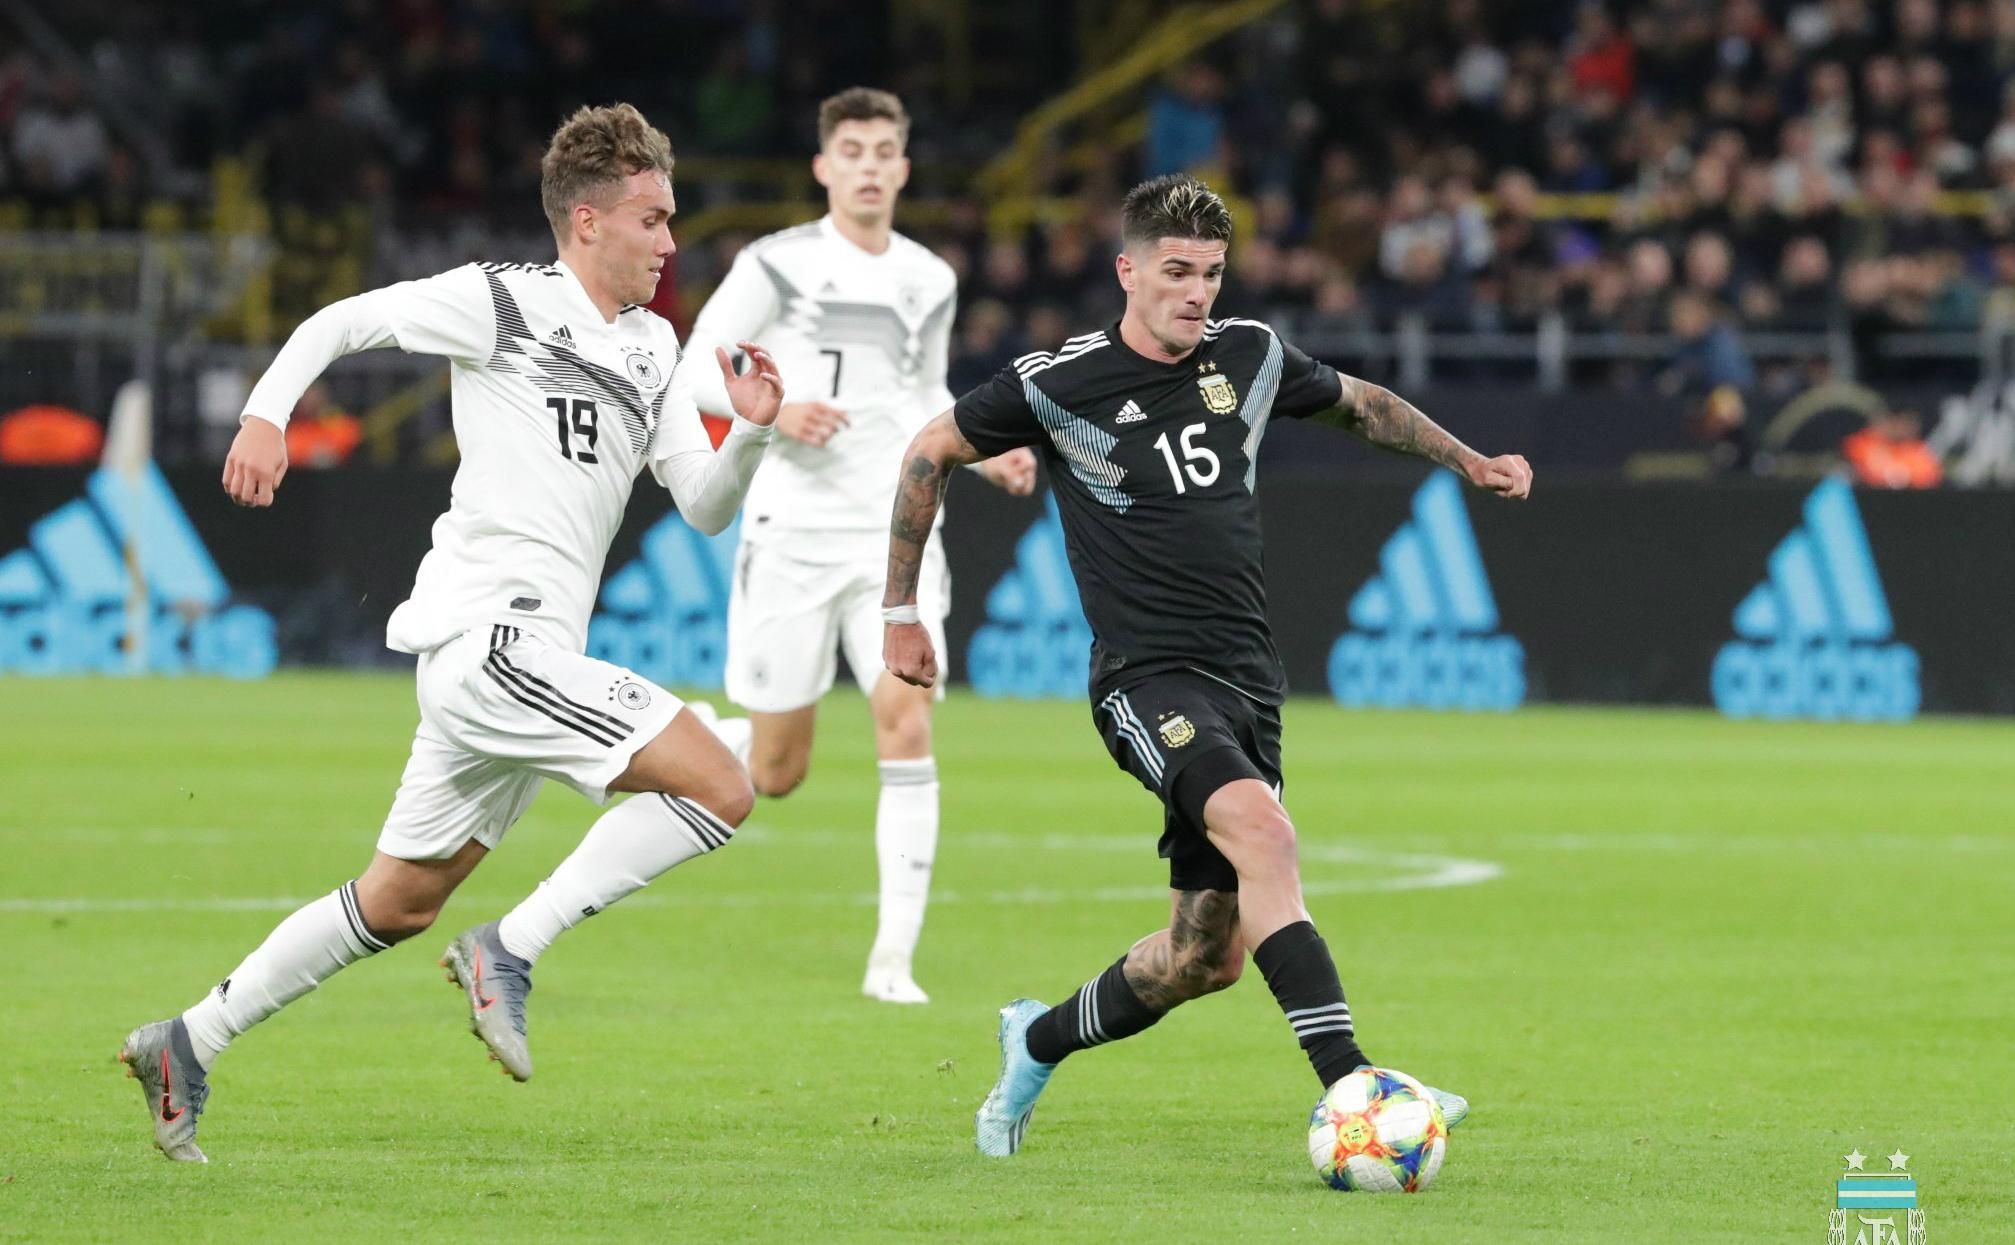 Аргентина эффектно спасла ничью в матче против Германии, проигрывая 2:0 (видео)